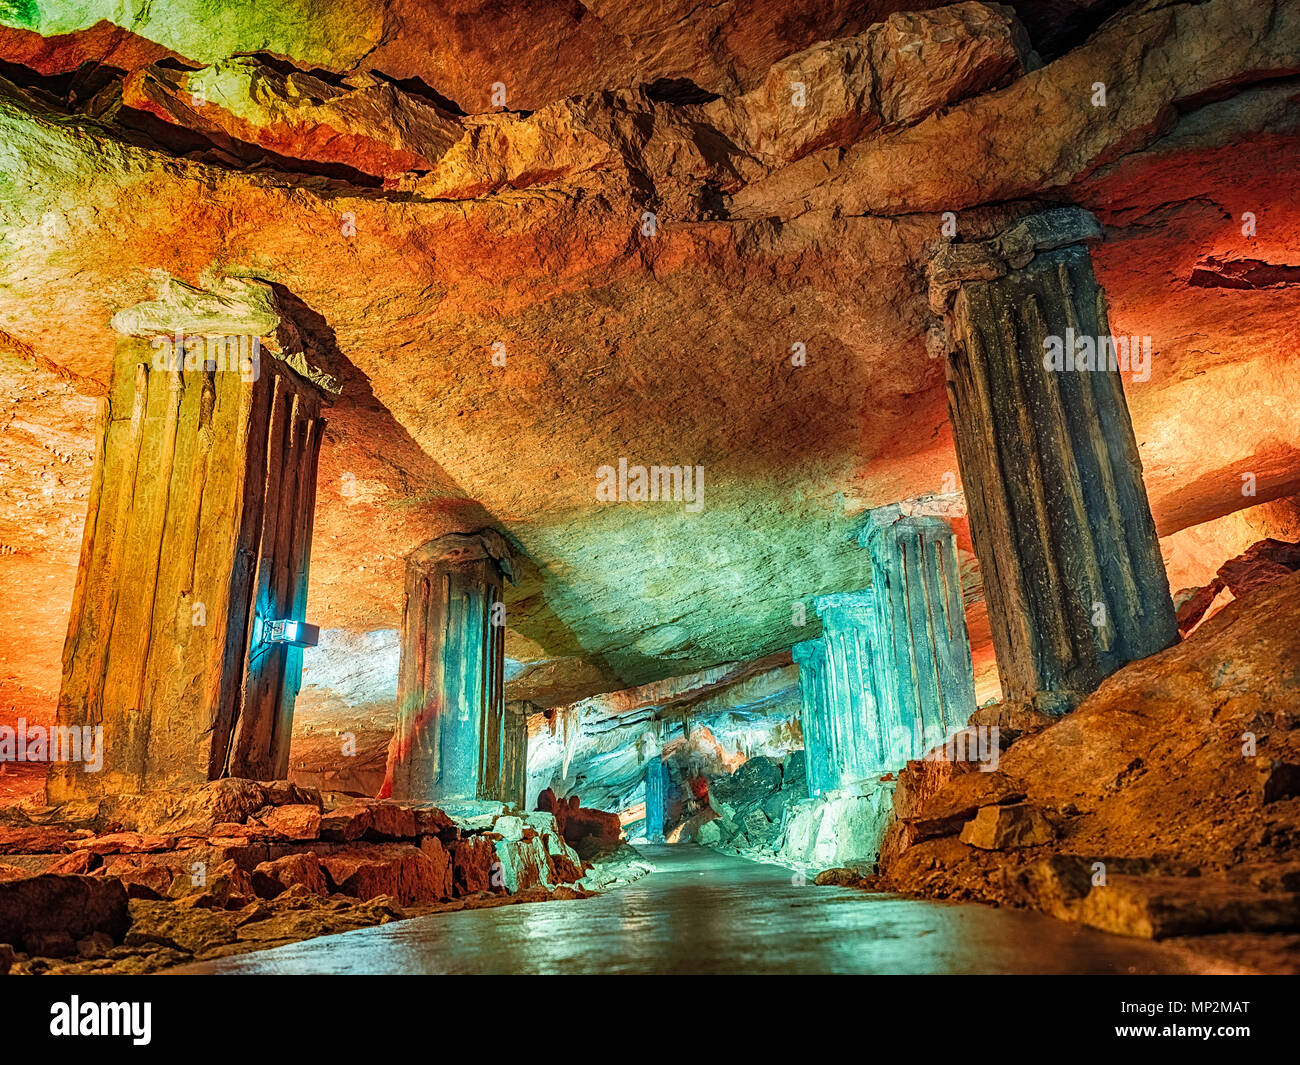 Wonderful Prometheus Cave. Stalactites and stalagmites in the illuminated cave Stock Photo